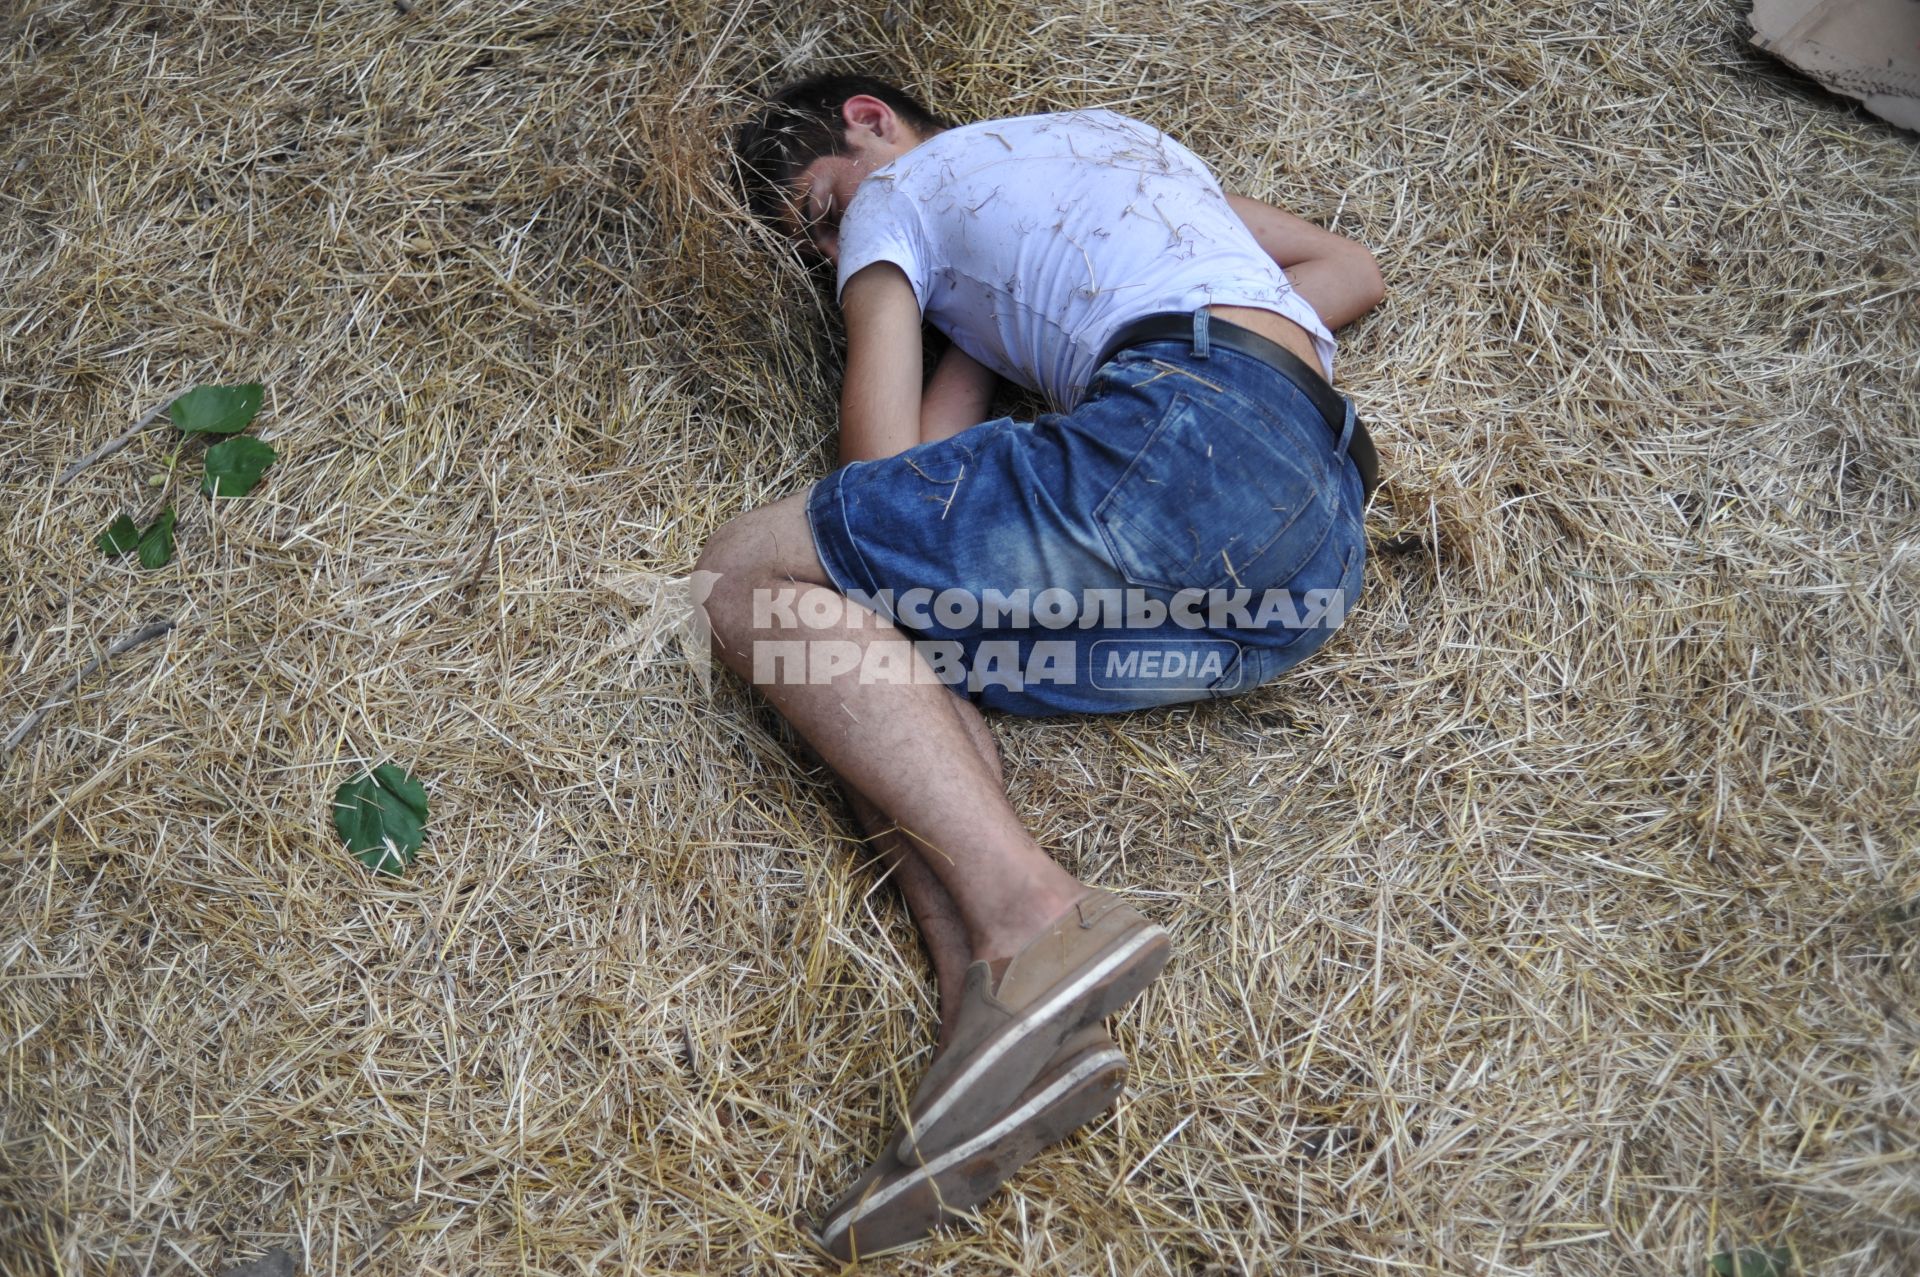 Армения, Ереван. Молодой человек спит после ночной акции протеста против повышения цен на электричество.